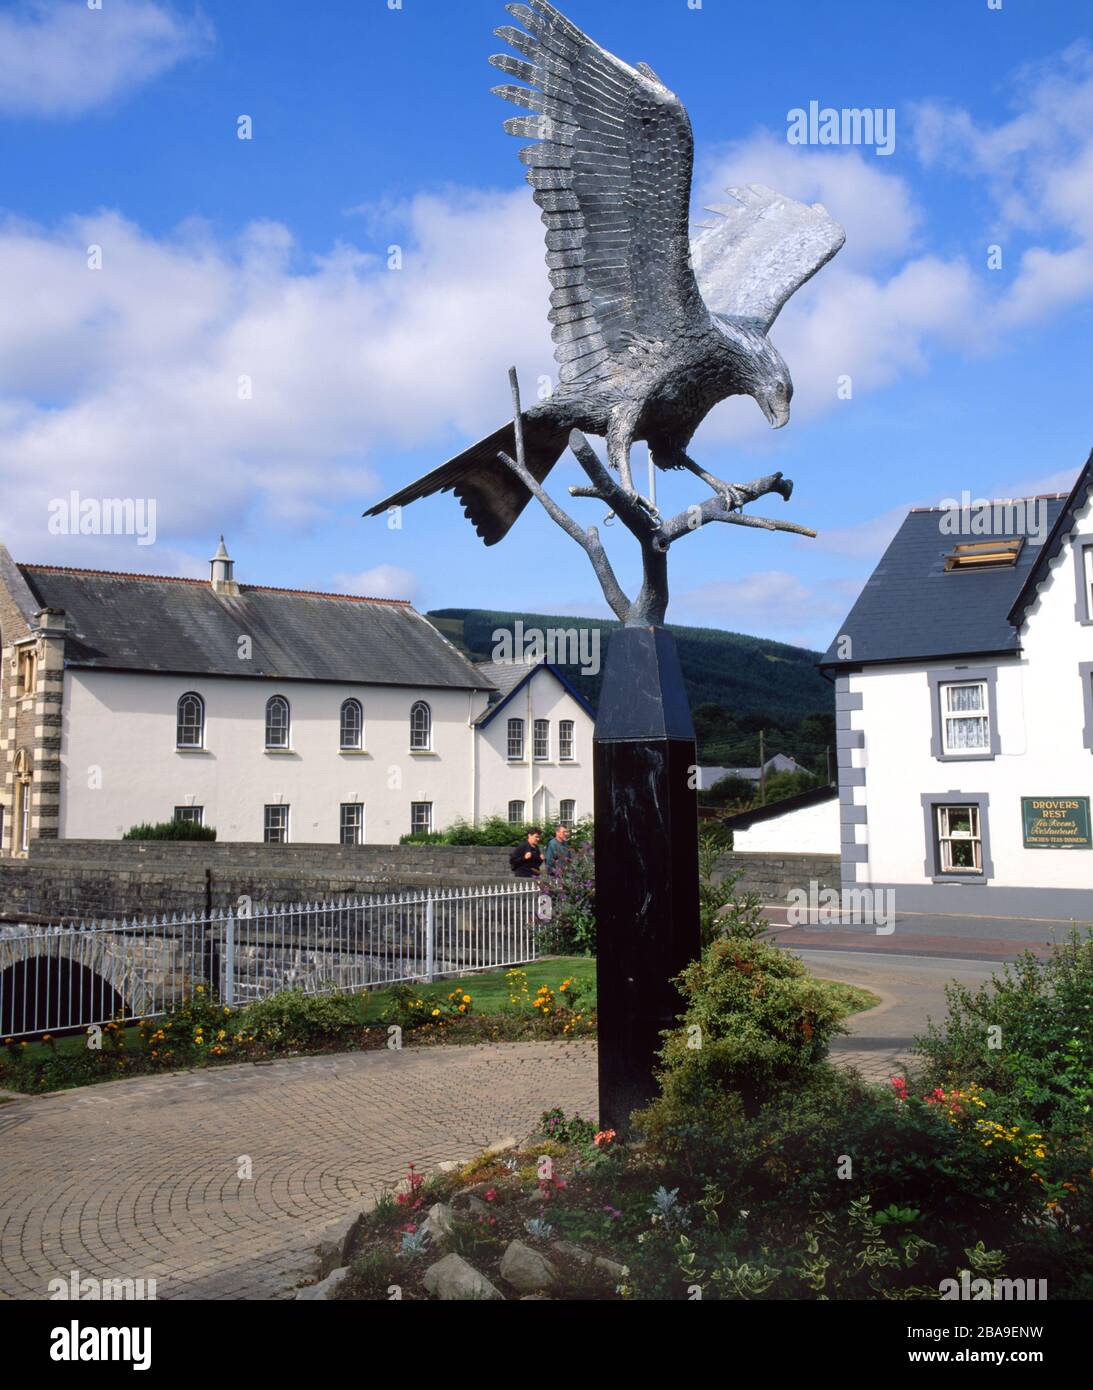 Skulptur von Red Kite 'Spirit in the Sky' von Sandy O'Connor, Llanwrtyd Wells, Powys, Mid Wales. Stockfoto